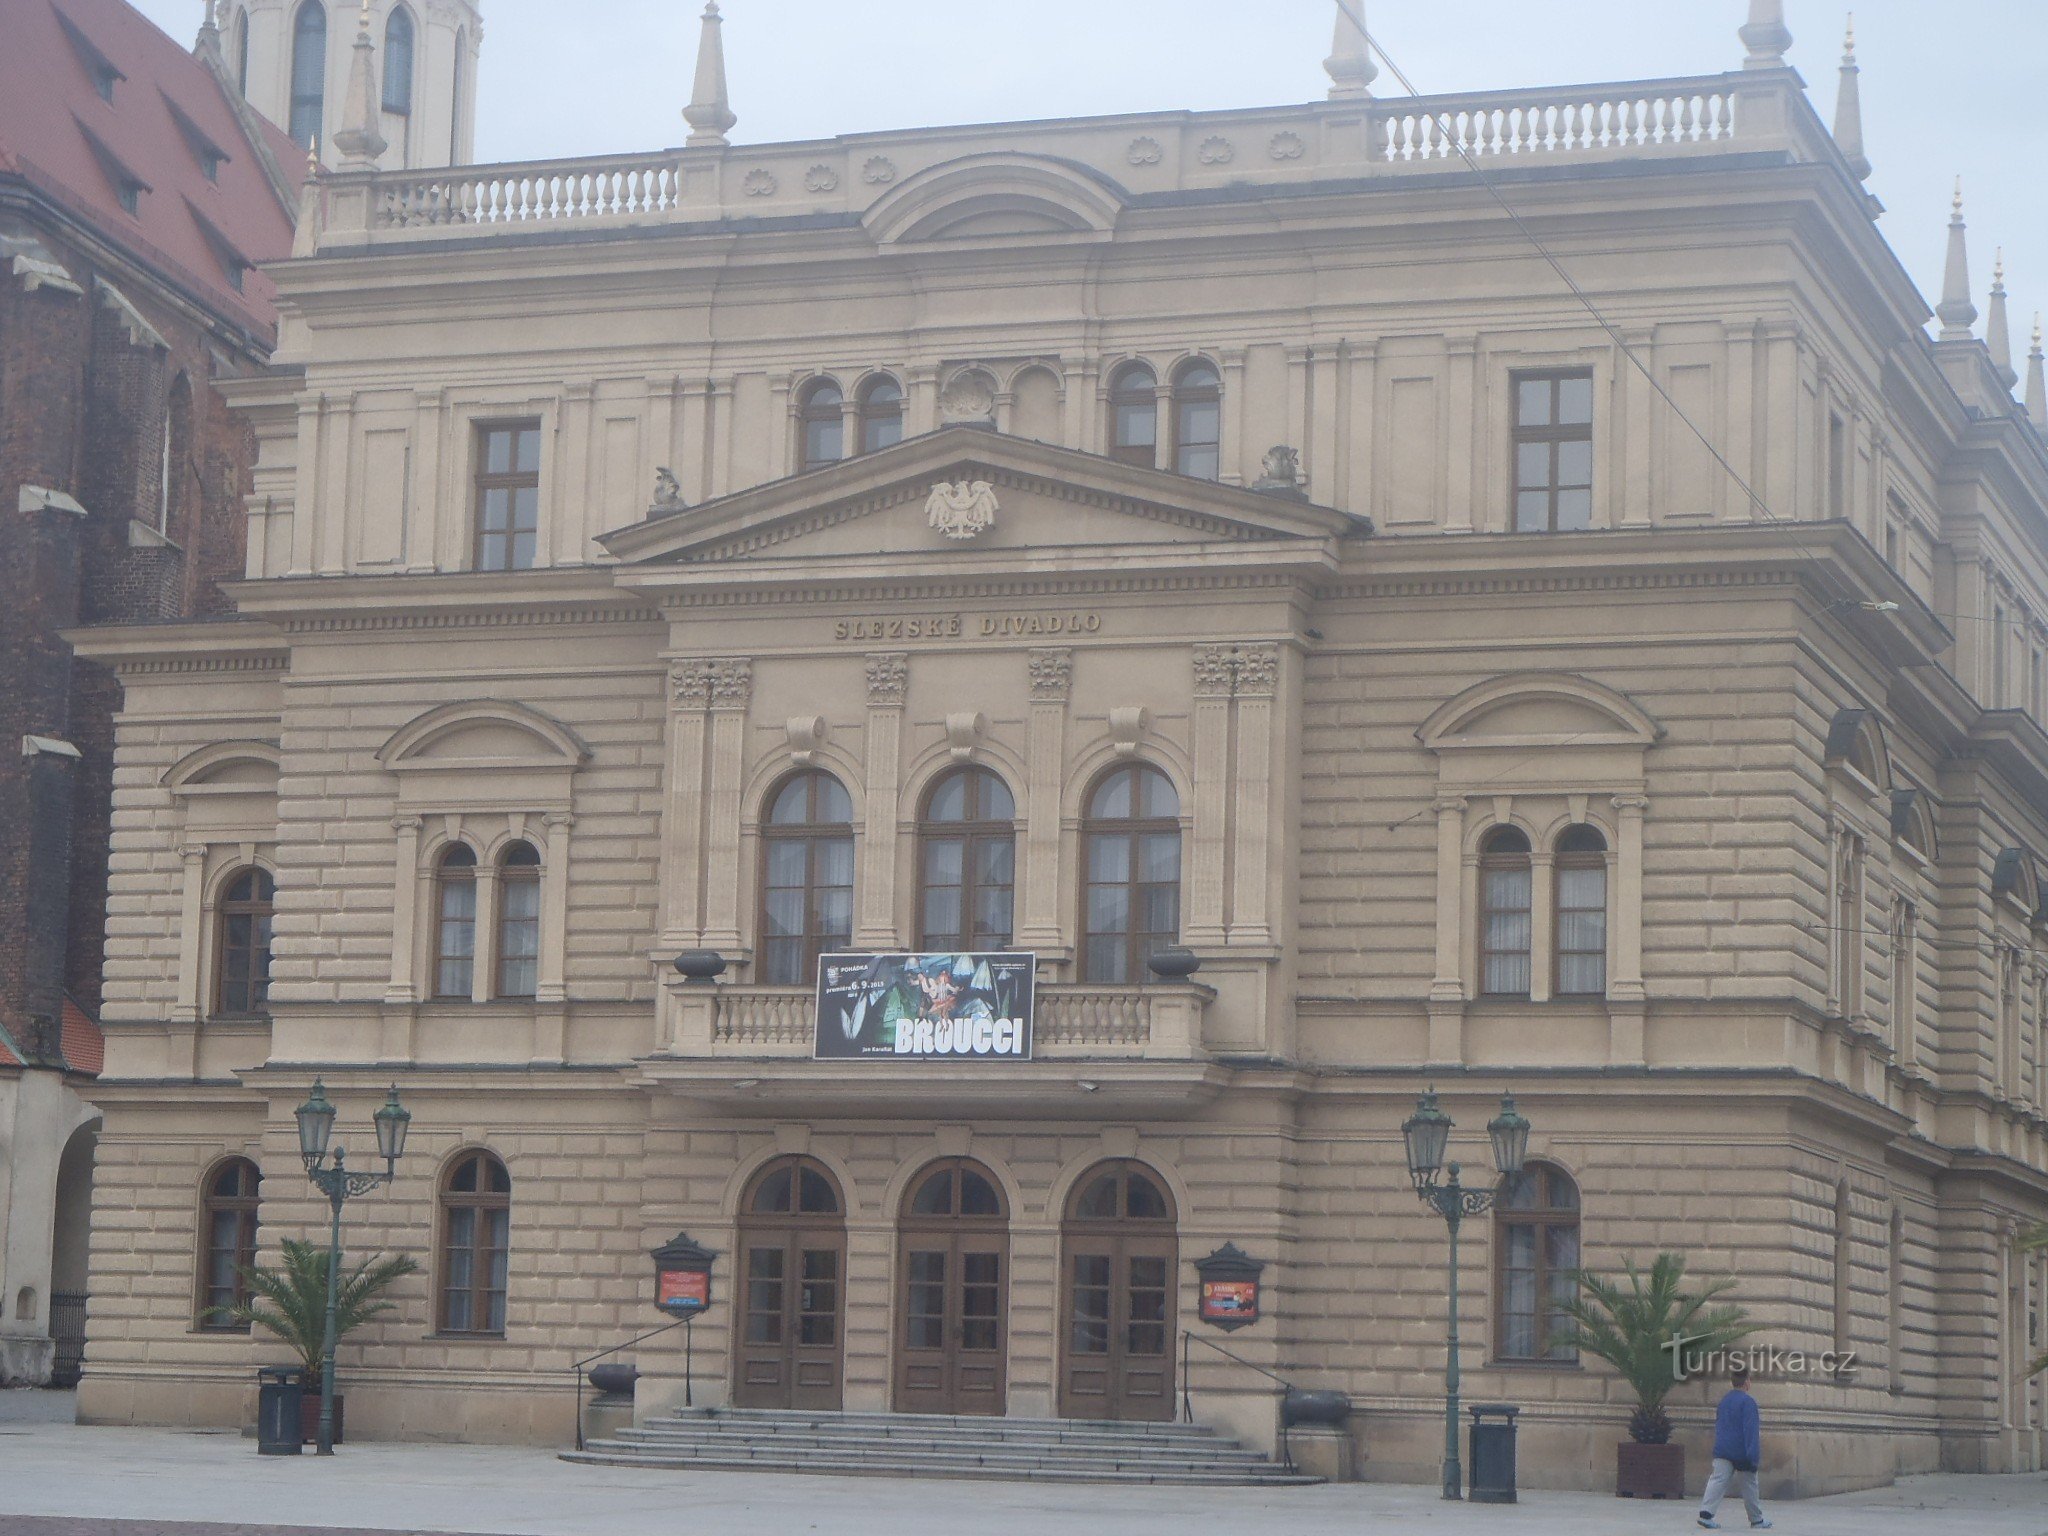 Silesian Theater